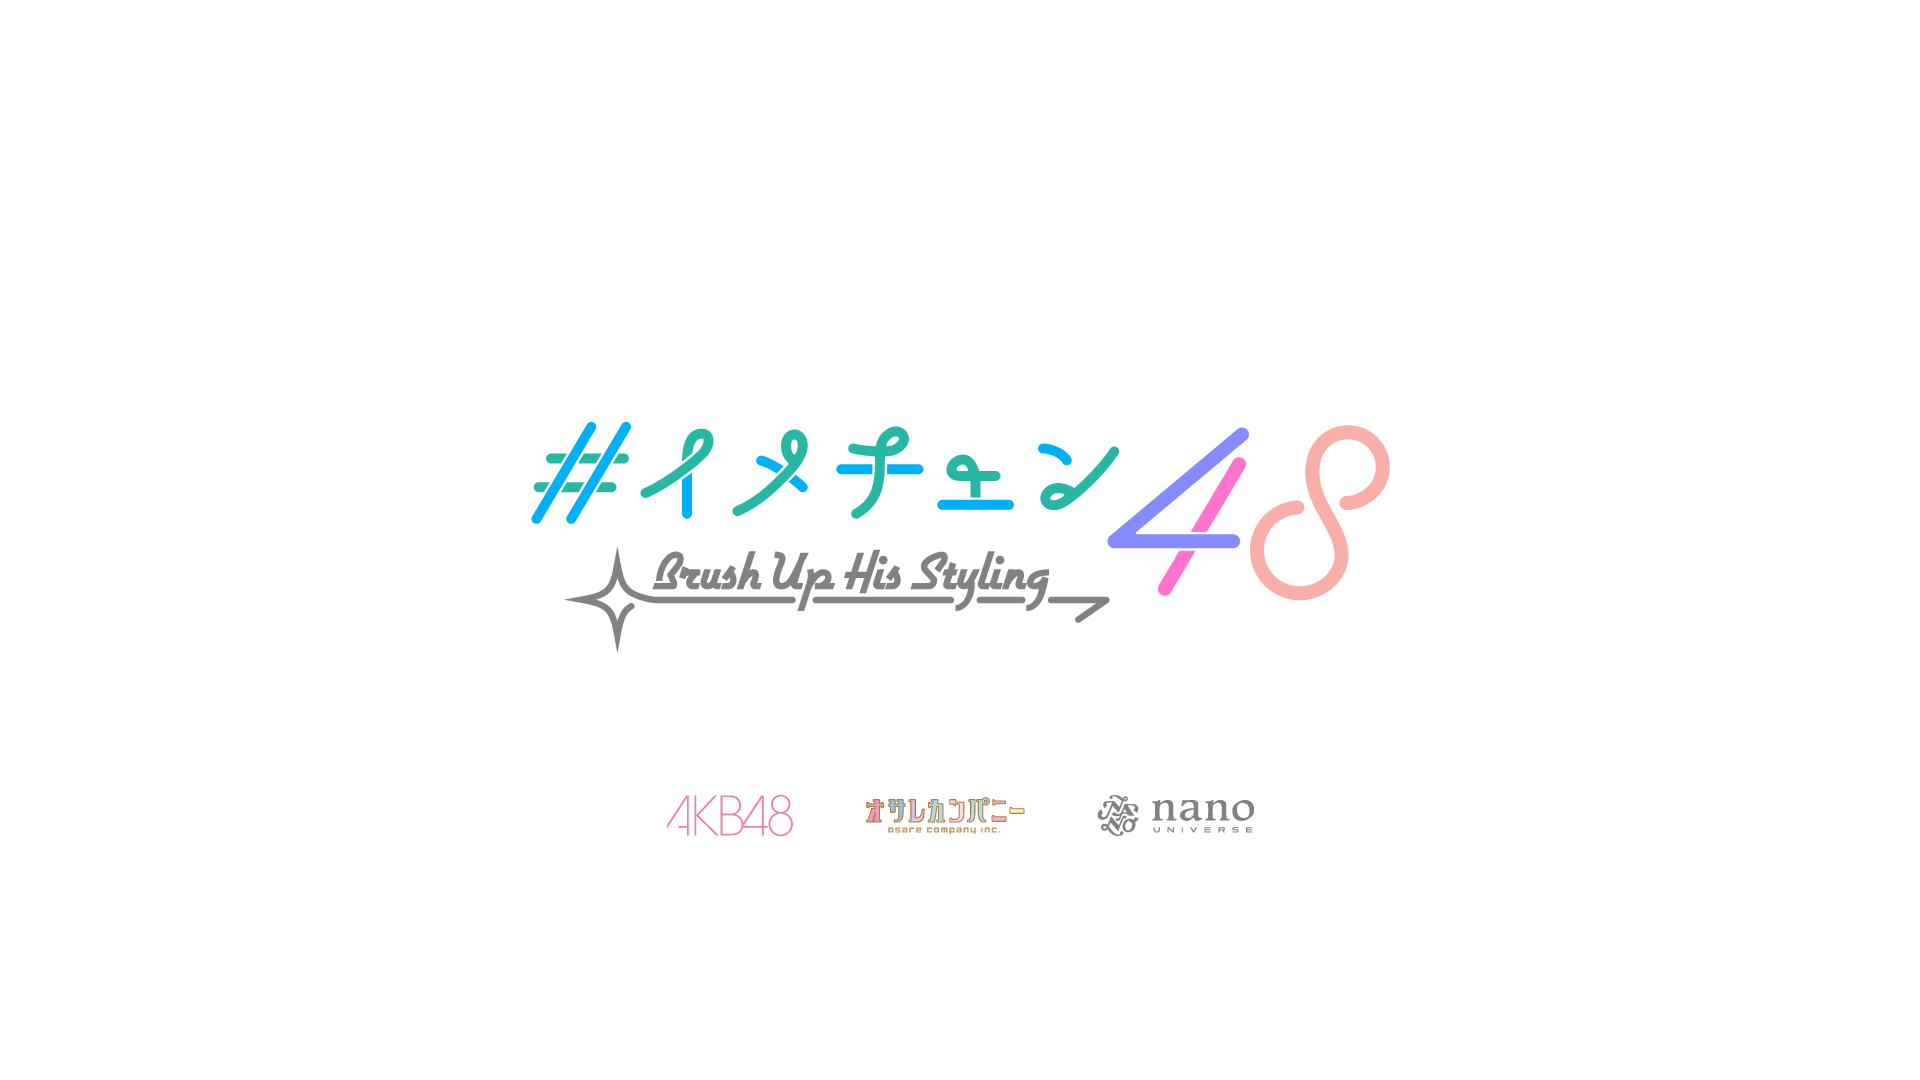 ナノ・ユニバース×AKB48×オサレカンパニー コラボレーション YouTube 企画「イメチェン 48」配信スタート!!